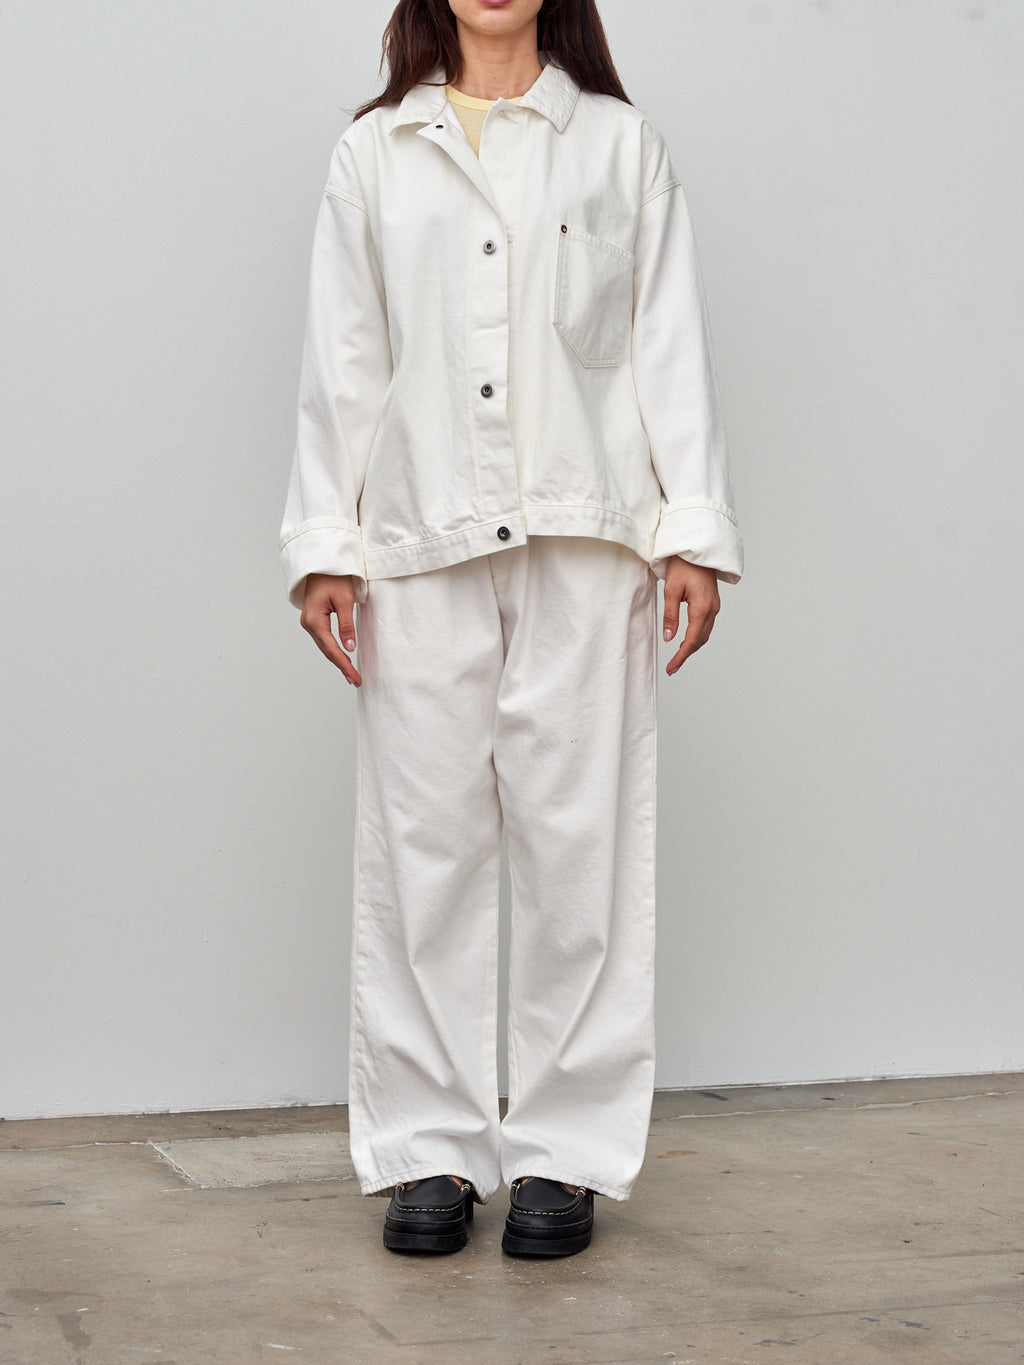 Namu Shop - Yoko Sakamoto Denim Blouse Jacket - White (One Wash)